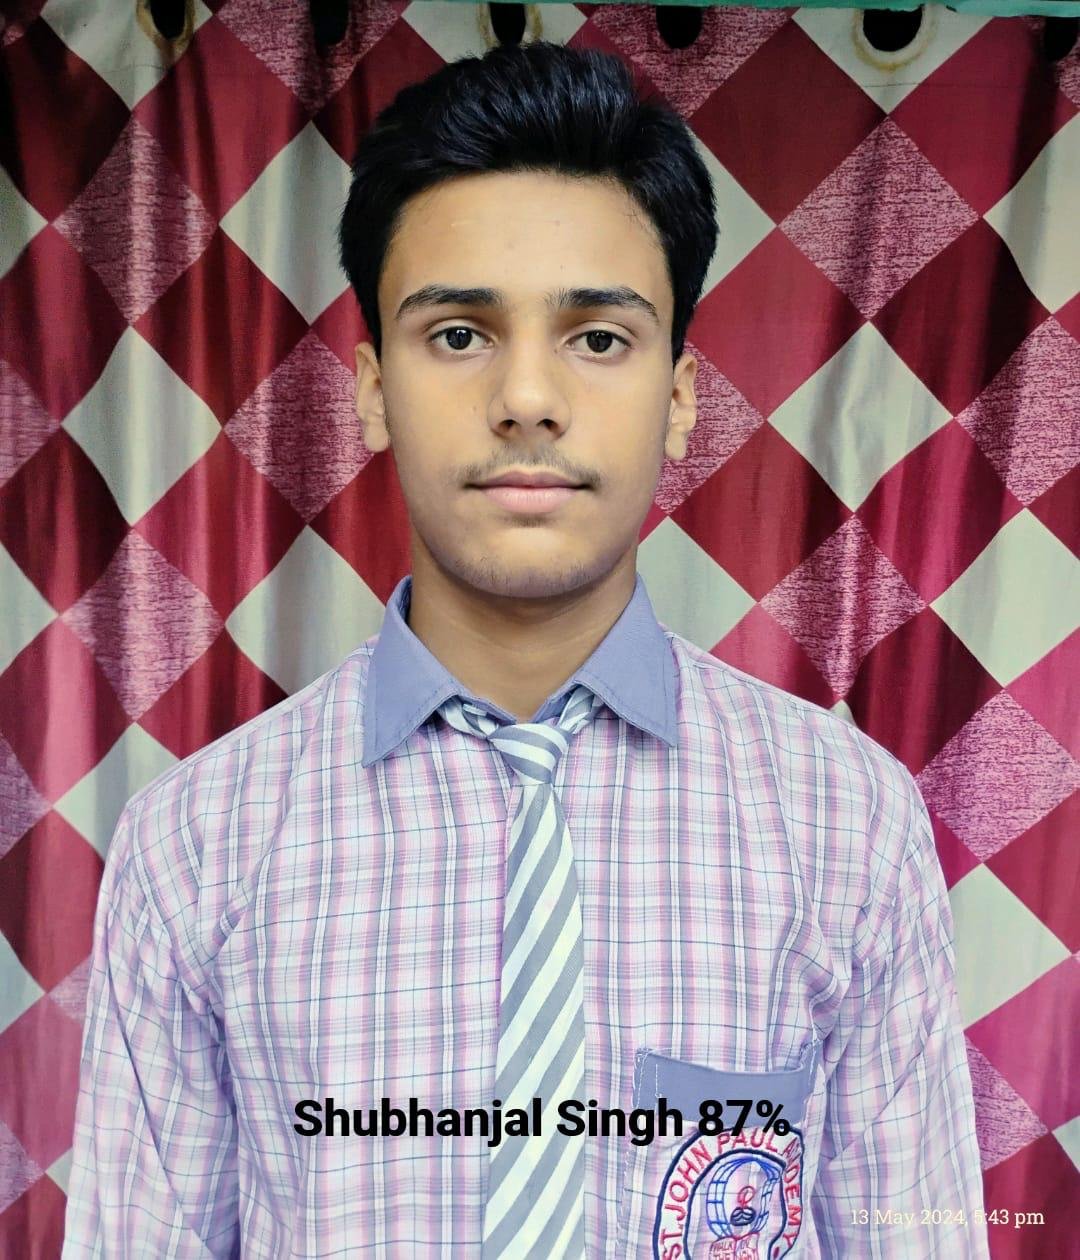 Shubhanjal Singh